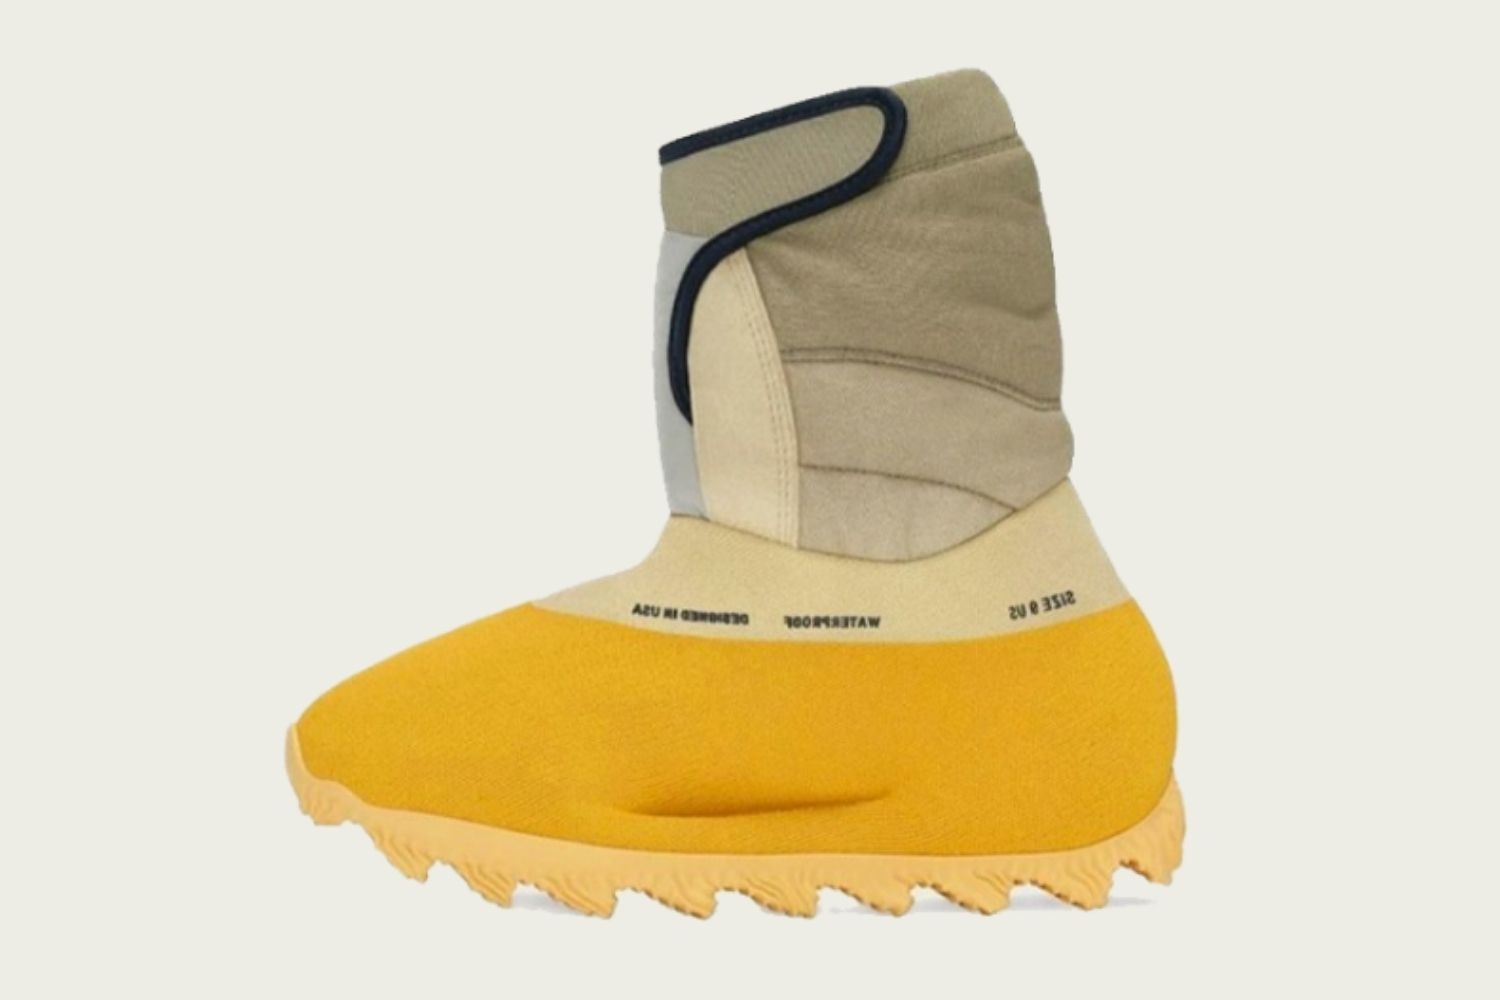 De adidas Yeezy Knit Runner Boot in een 'Sulfur' colorway